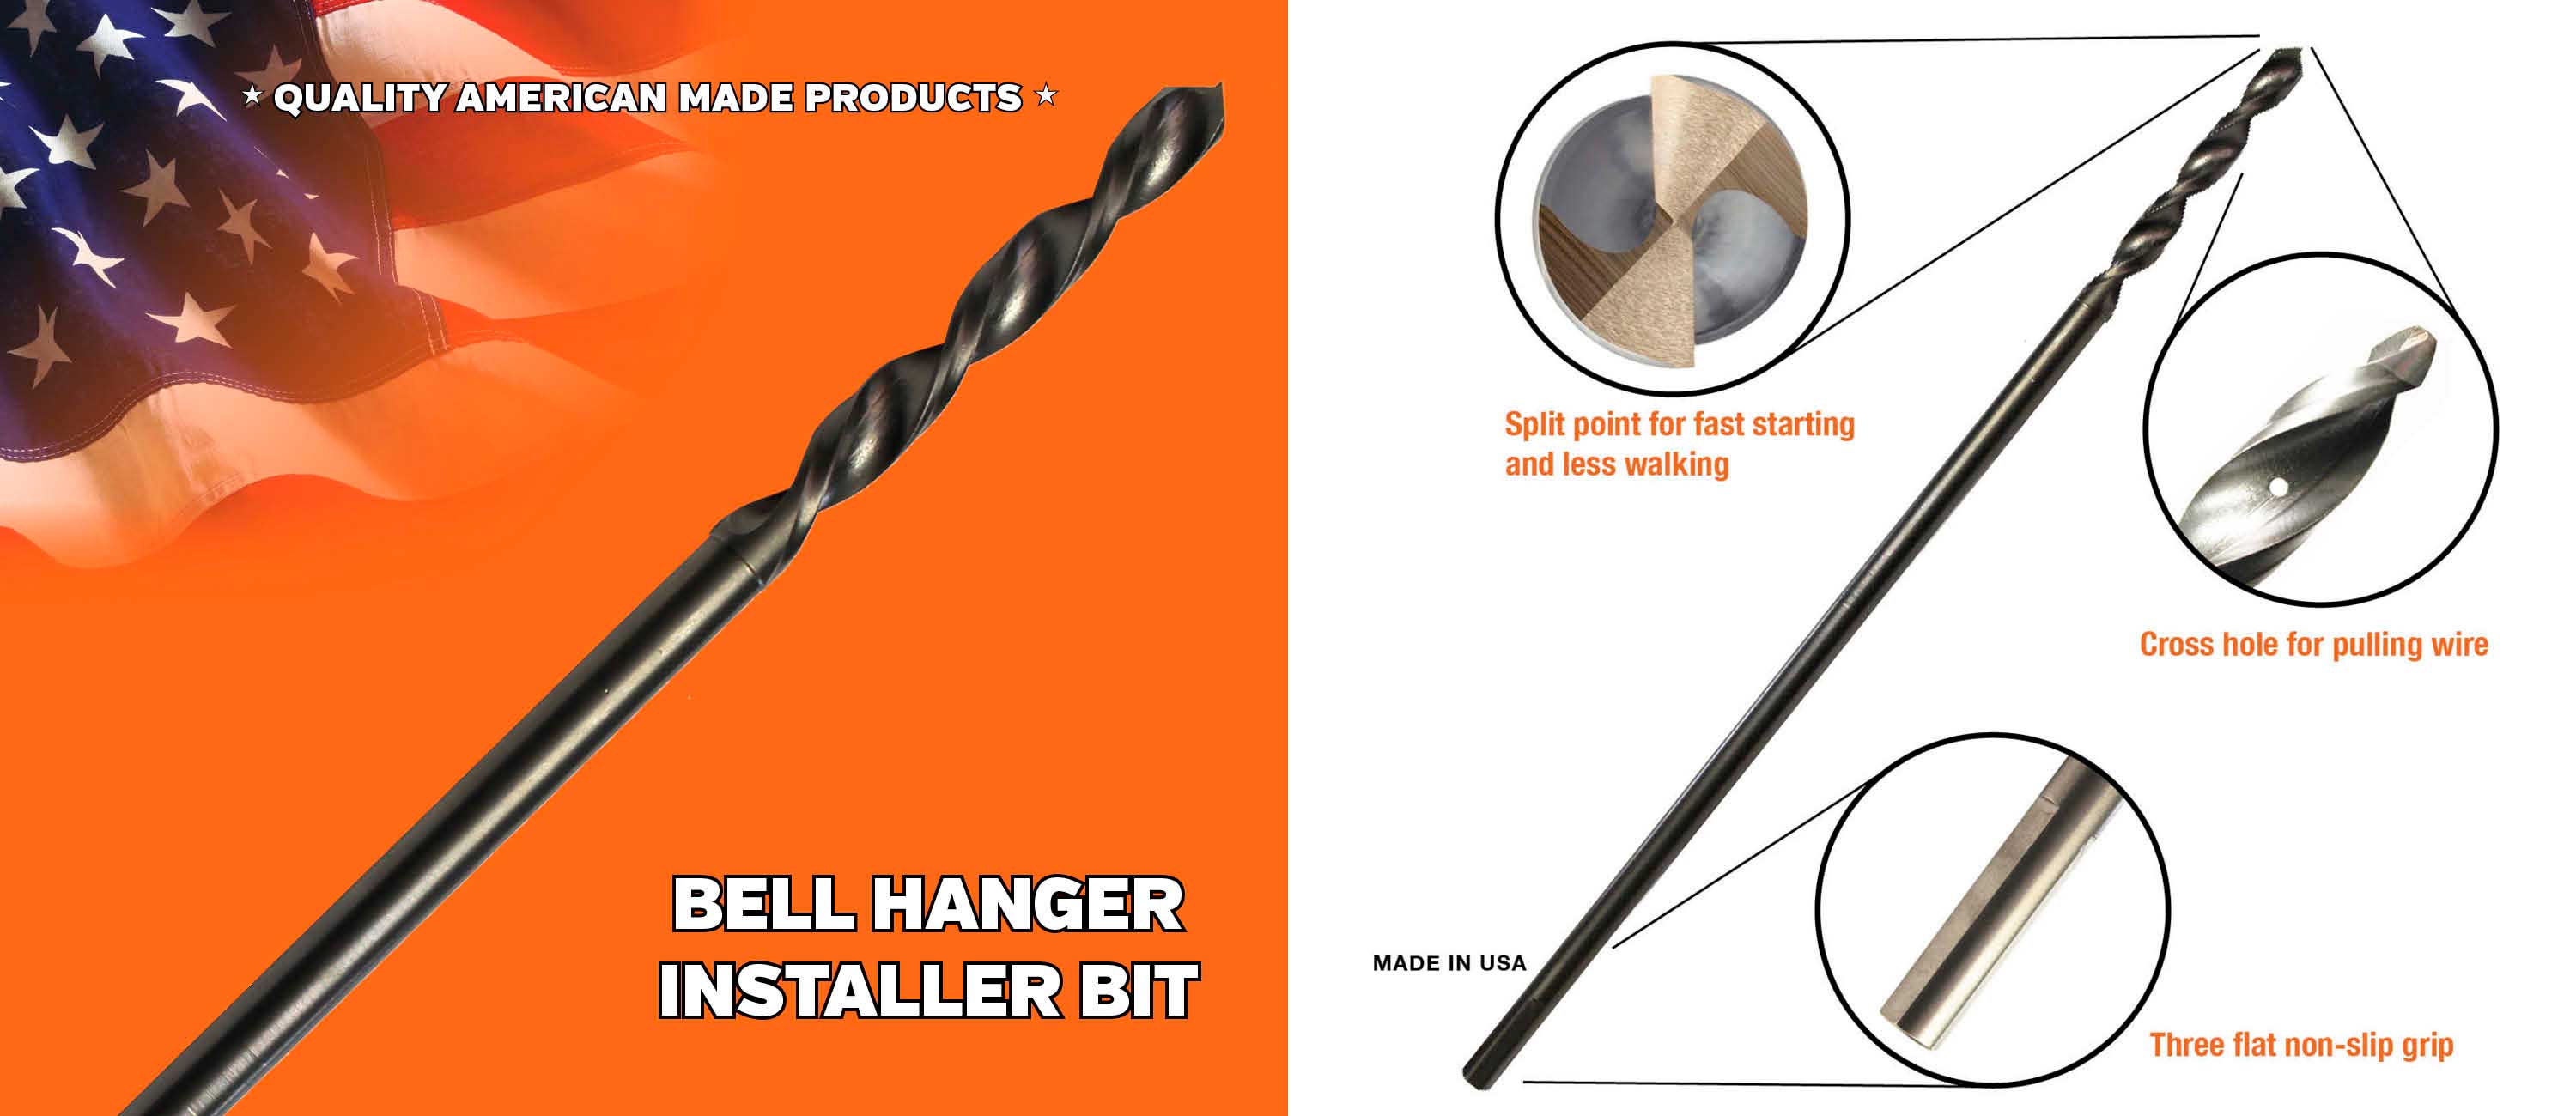 Bell Hanger Installer Bit